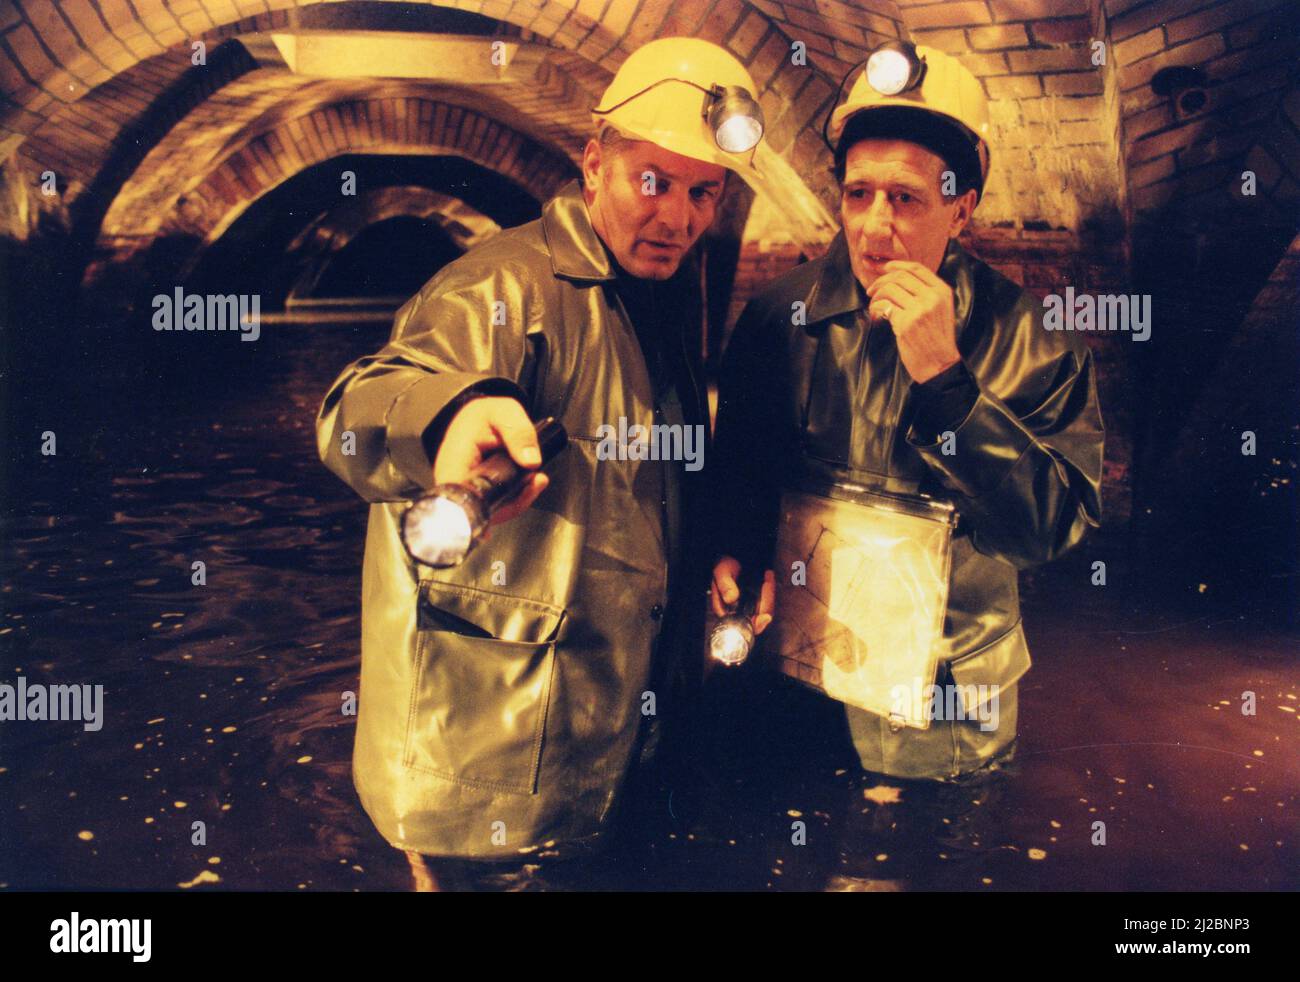 German actors Heinz Hoenig (left) and Rolf Zacher in the TV series Stan Becker - Echte Freunde, Germany 1999 Stock Photo